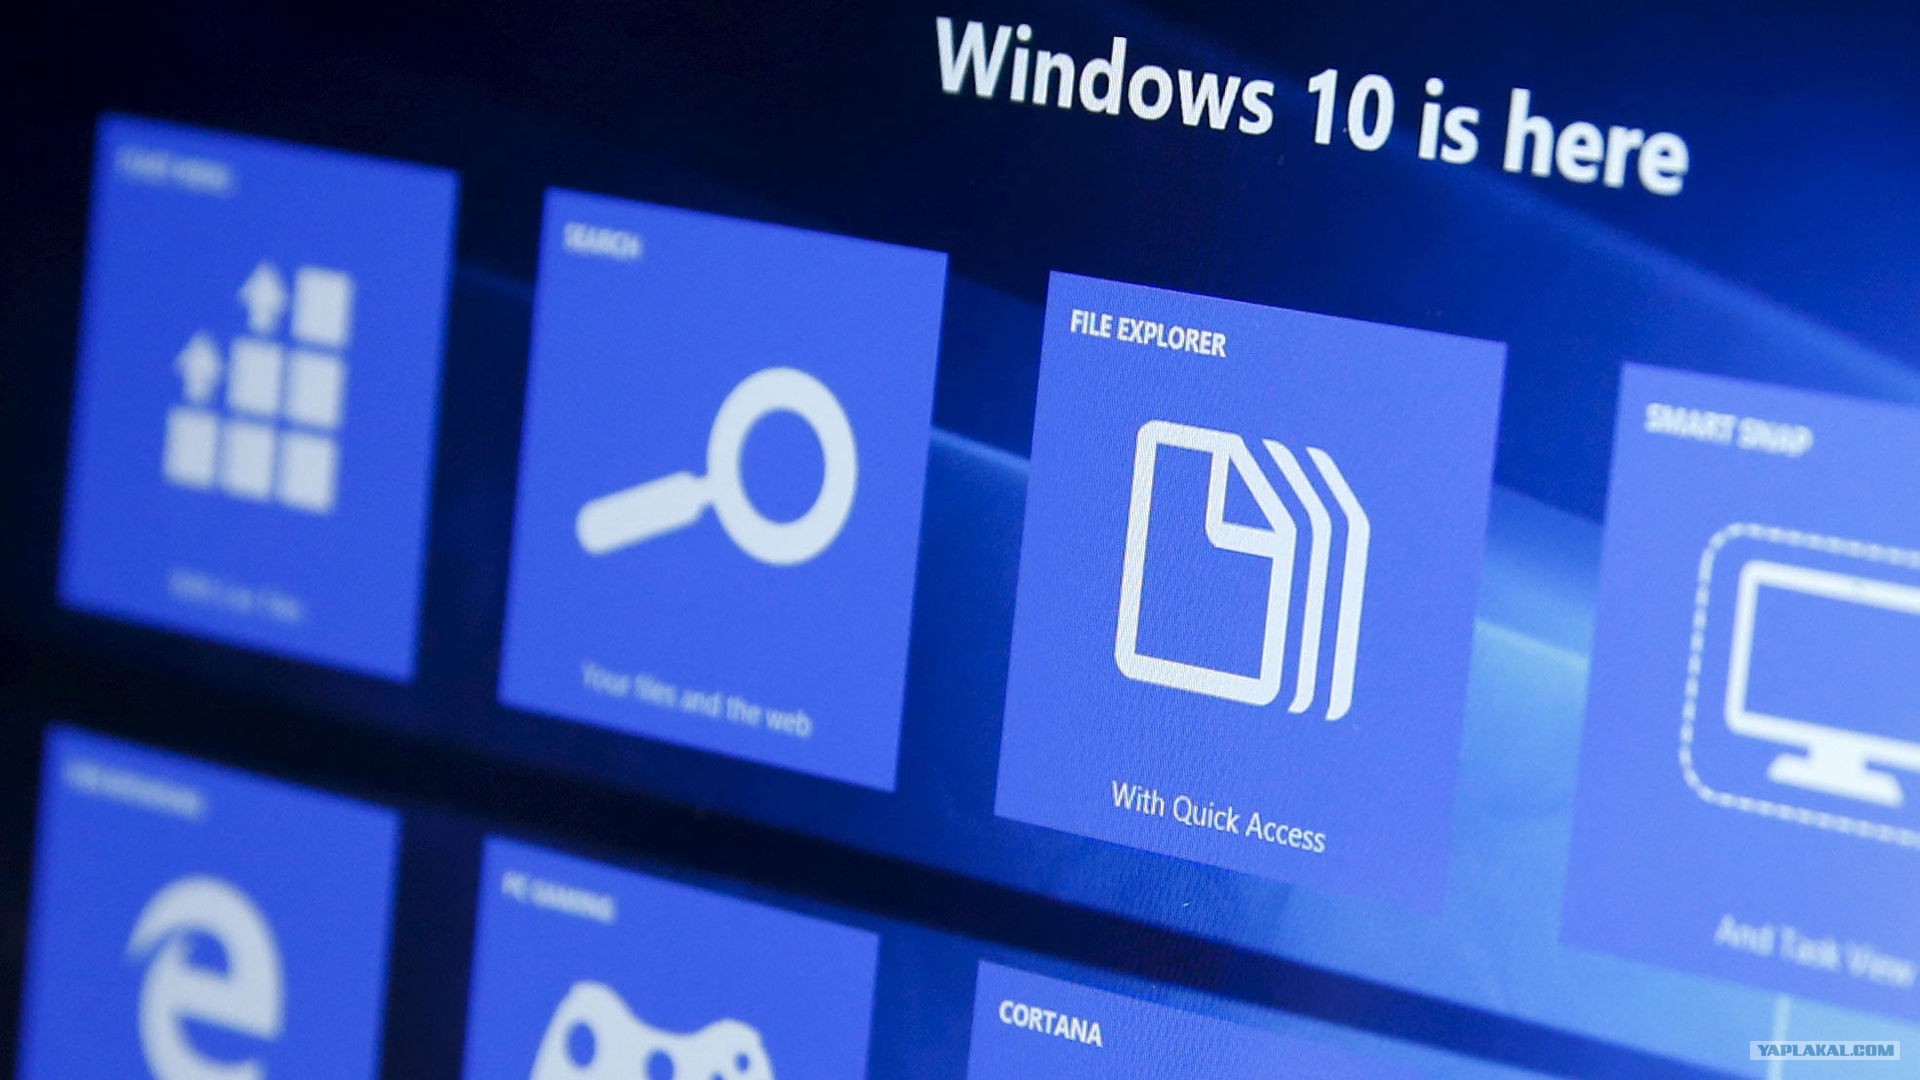 Windows 10   